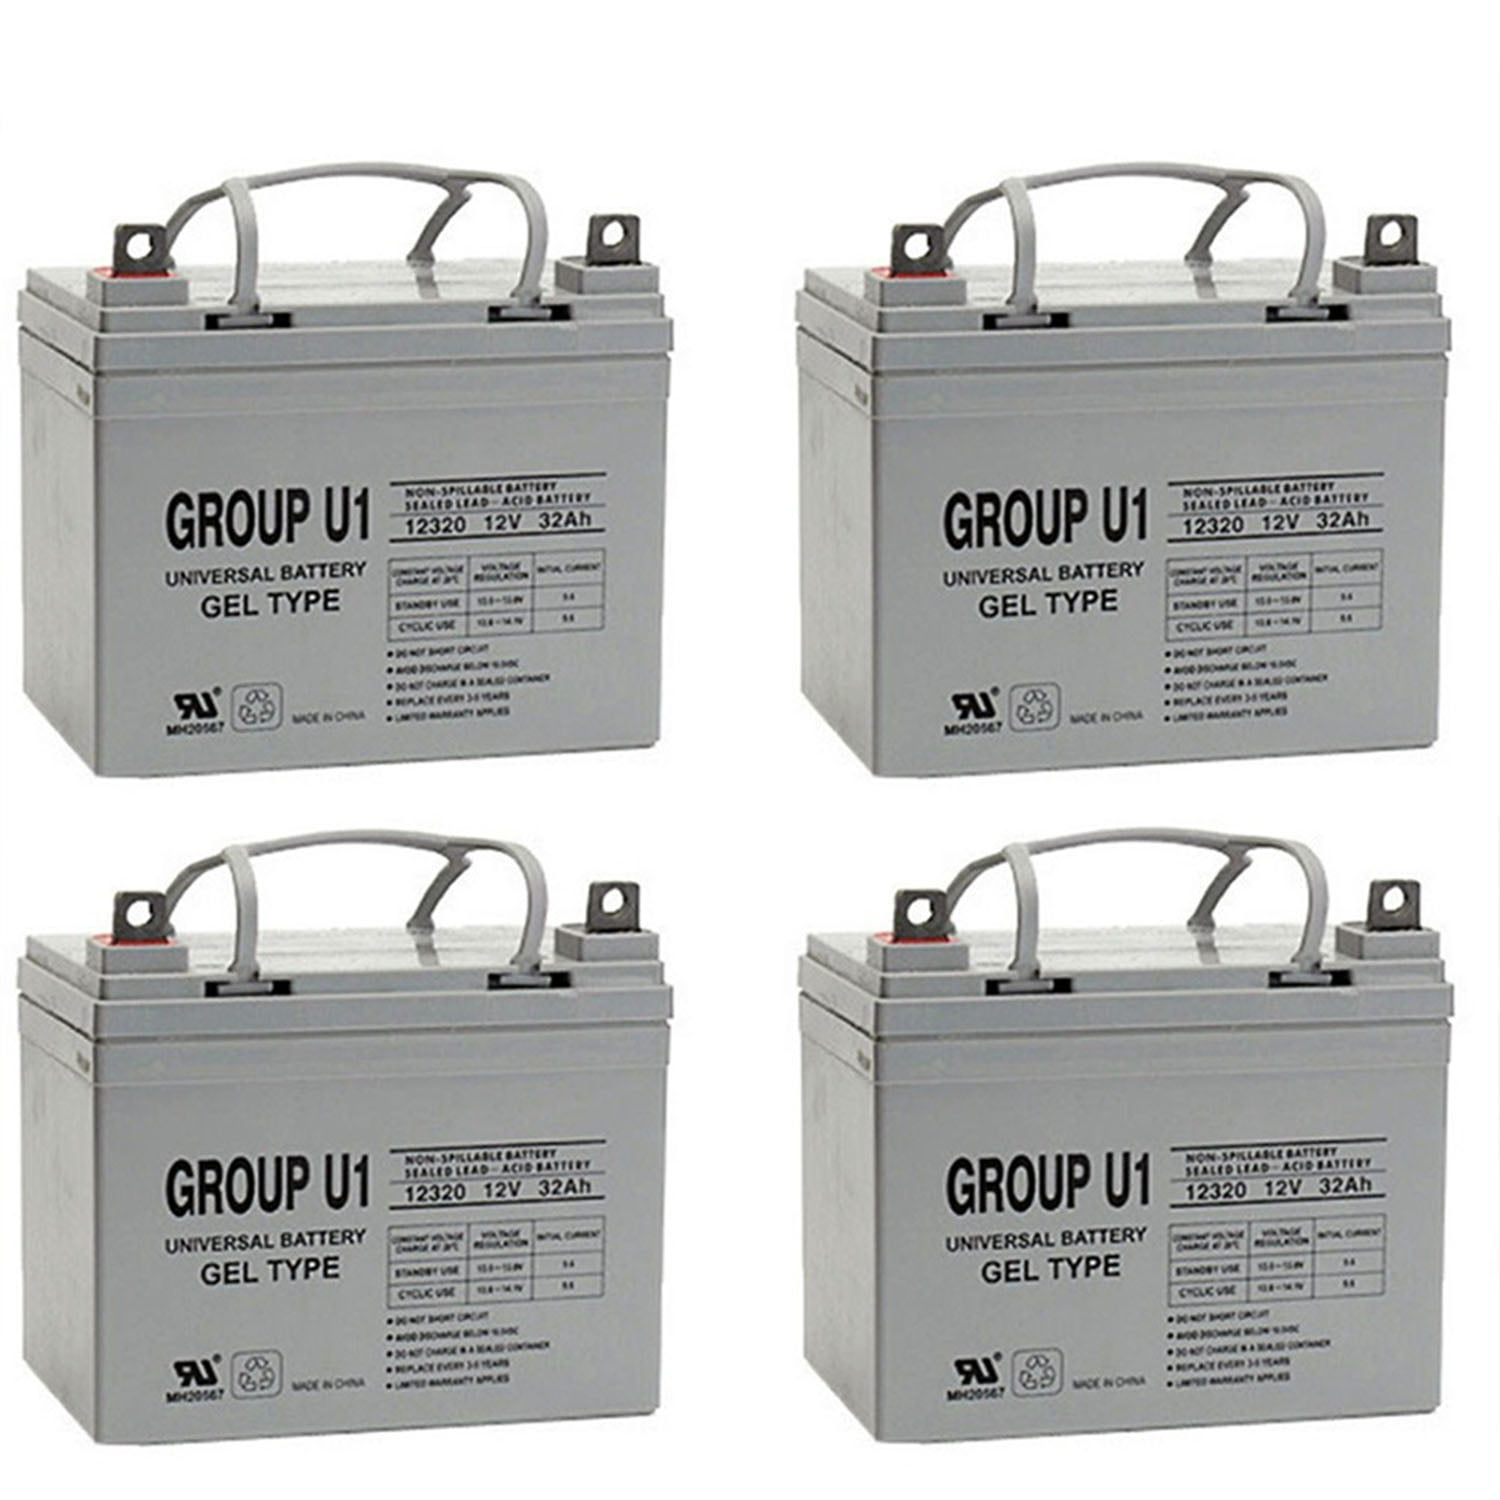 56-810 EMPEX S4 E05 Batterie 12V 60Ah 560A B13 EFB-Batterie